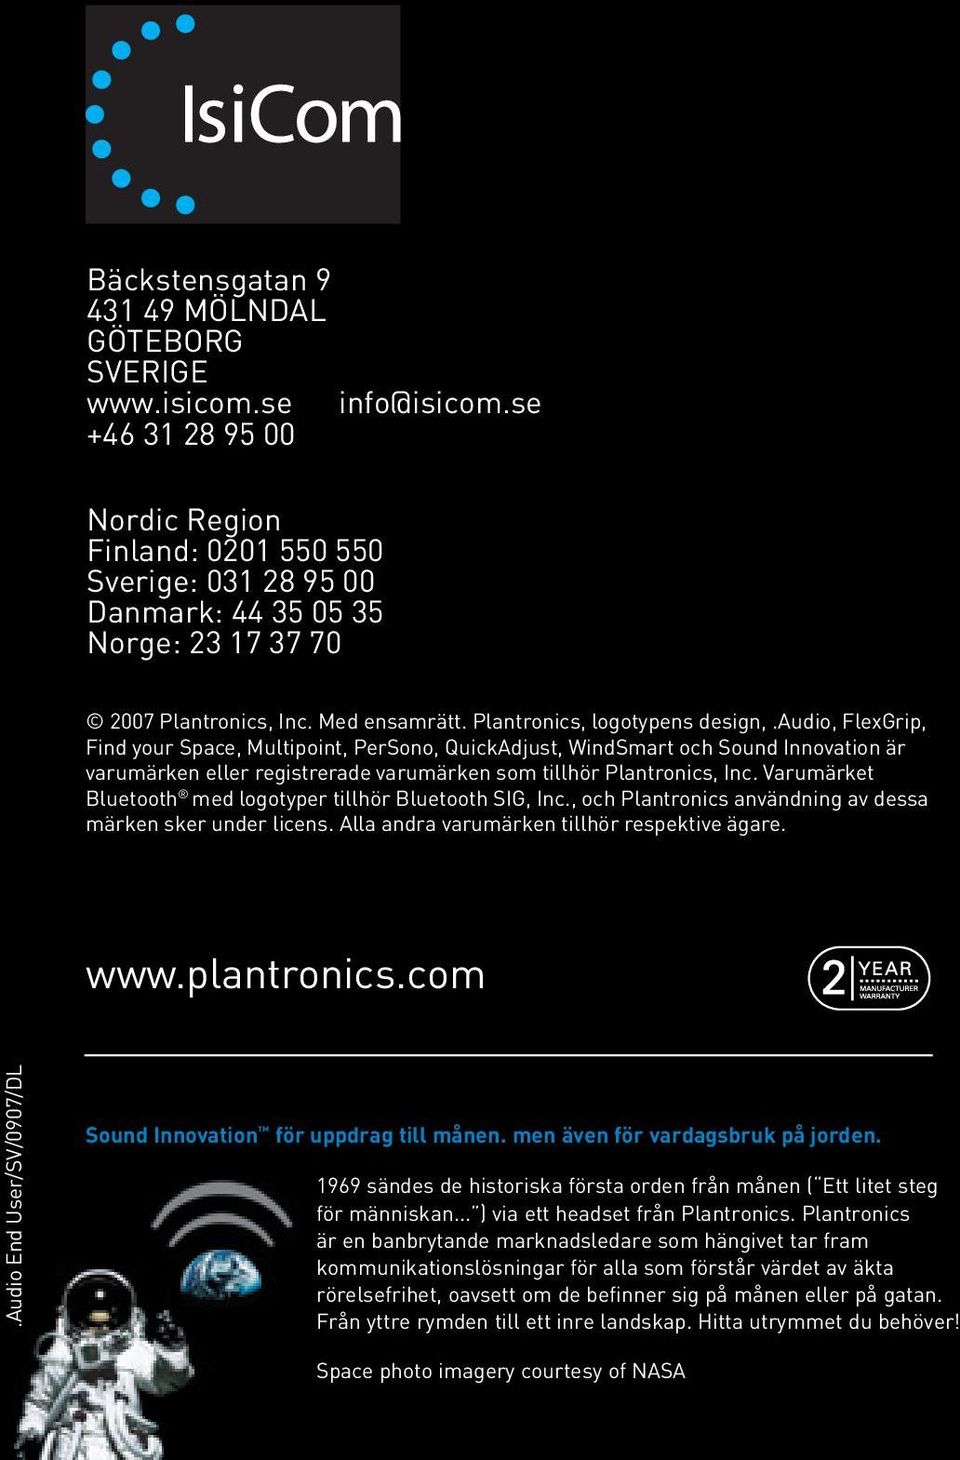 audio, FlexGrip, Find your Space, Multipoint, PerSono, QuickAdjust, WindSmart och Sound Innovation är varumärken eller registrerade varumärken som tillhör Plantronics, Inc.